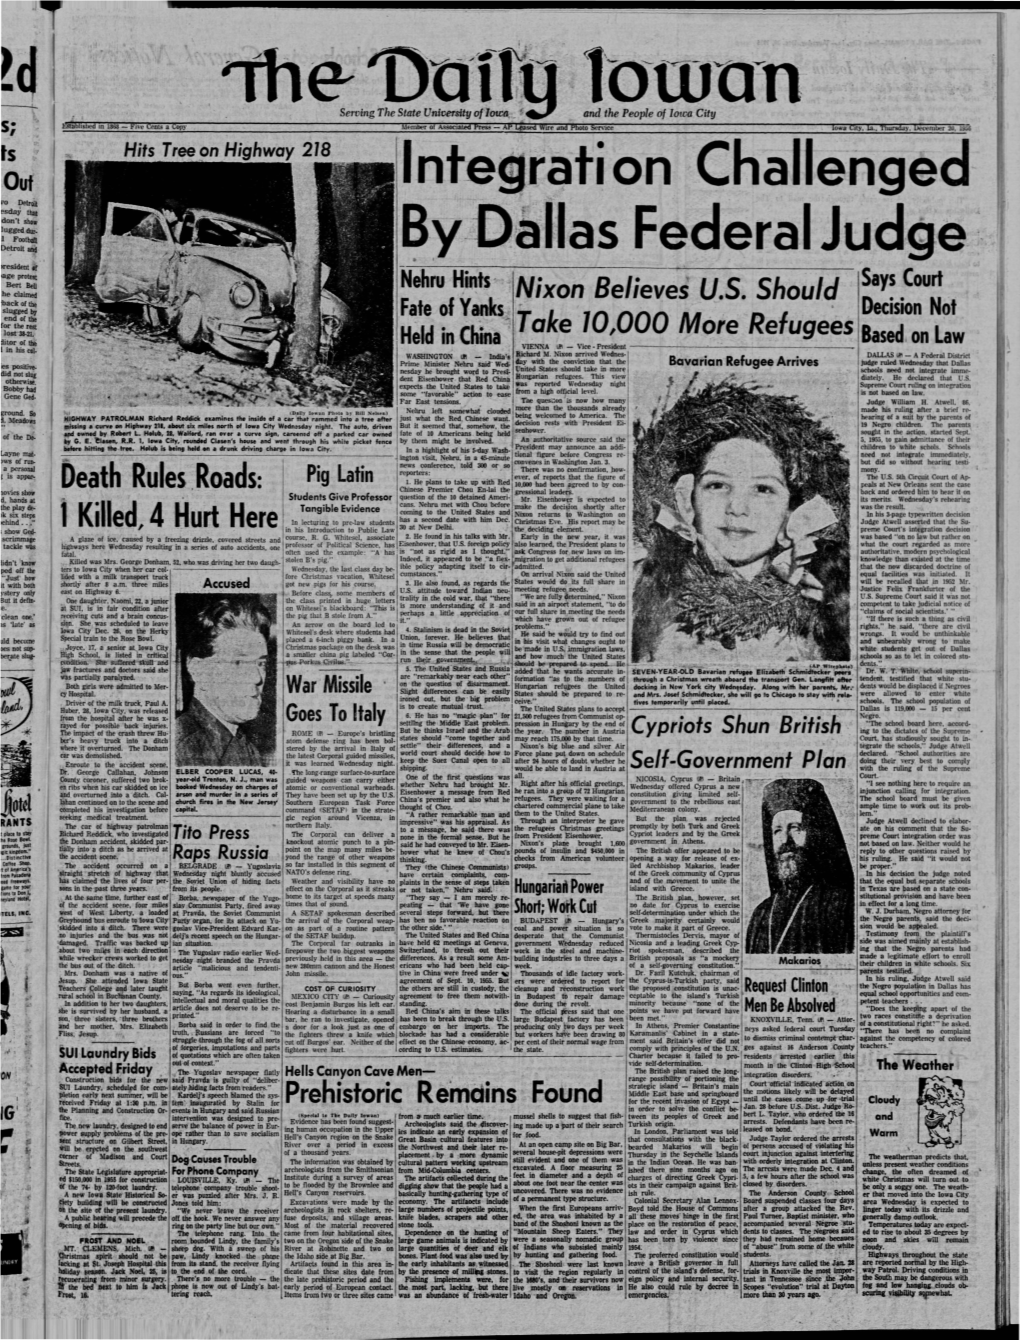 Daily Iowan (Iowa City, Iowa), 1956-12-20